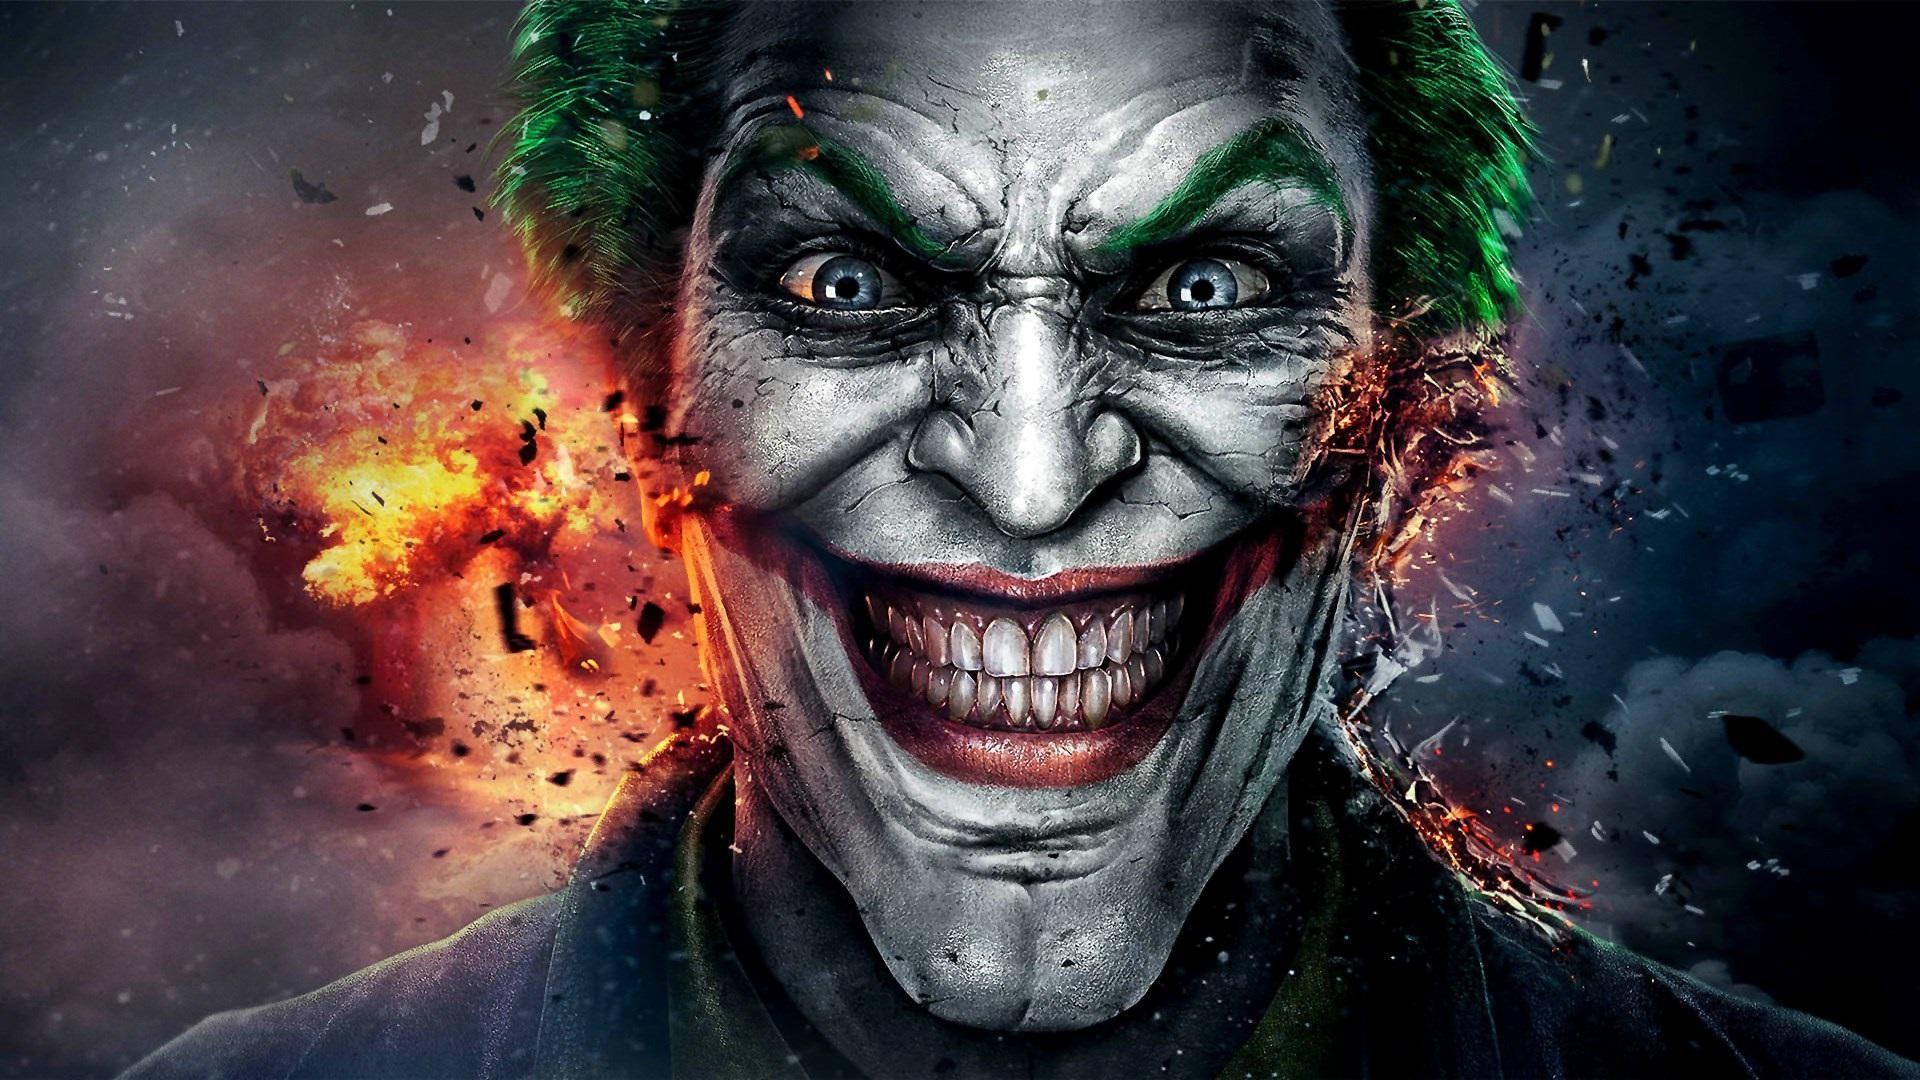 Joker 2019 Wallpapers • TrumpWallpapers